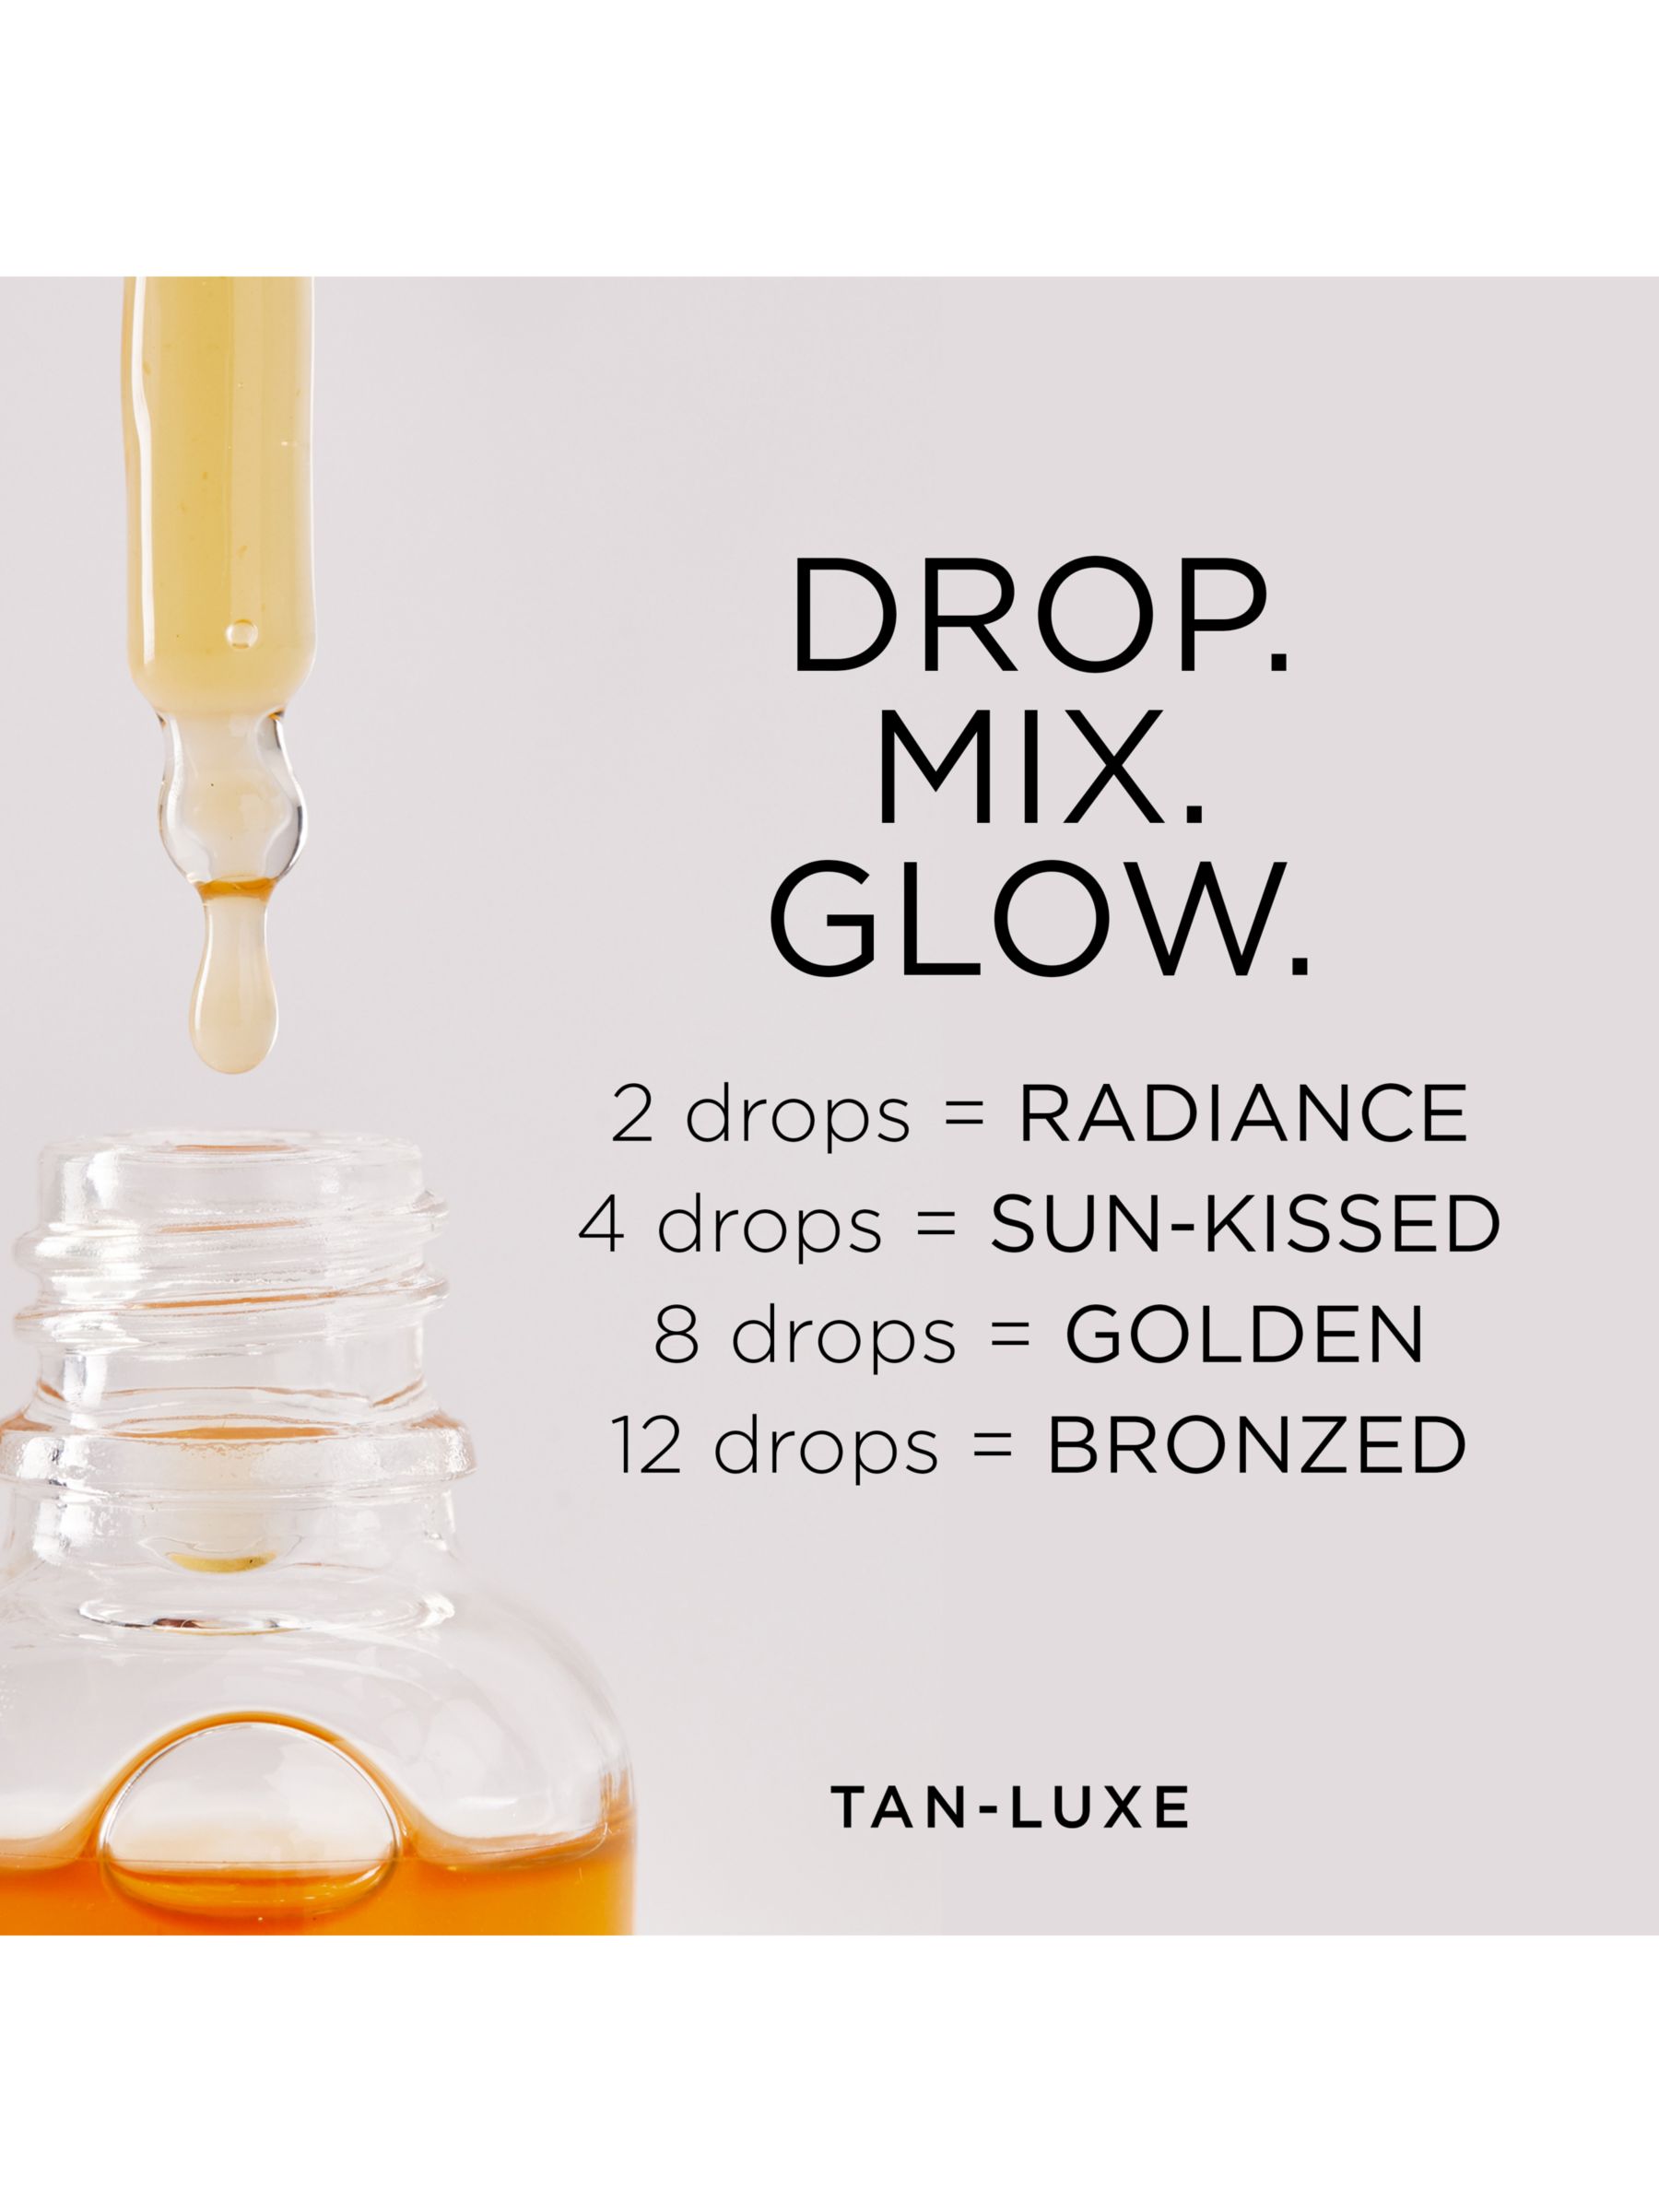 Tan-Luxe The Body Illuminating Self-Tan Drops, Light/Medium